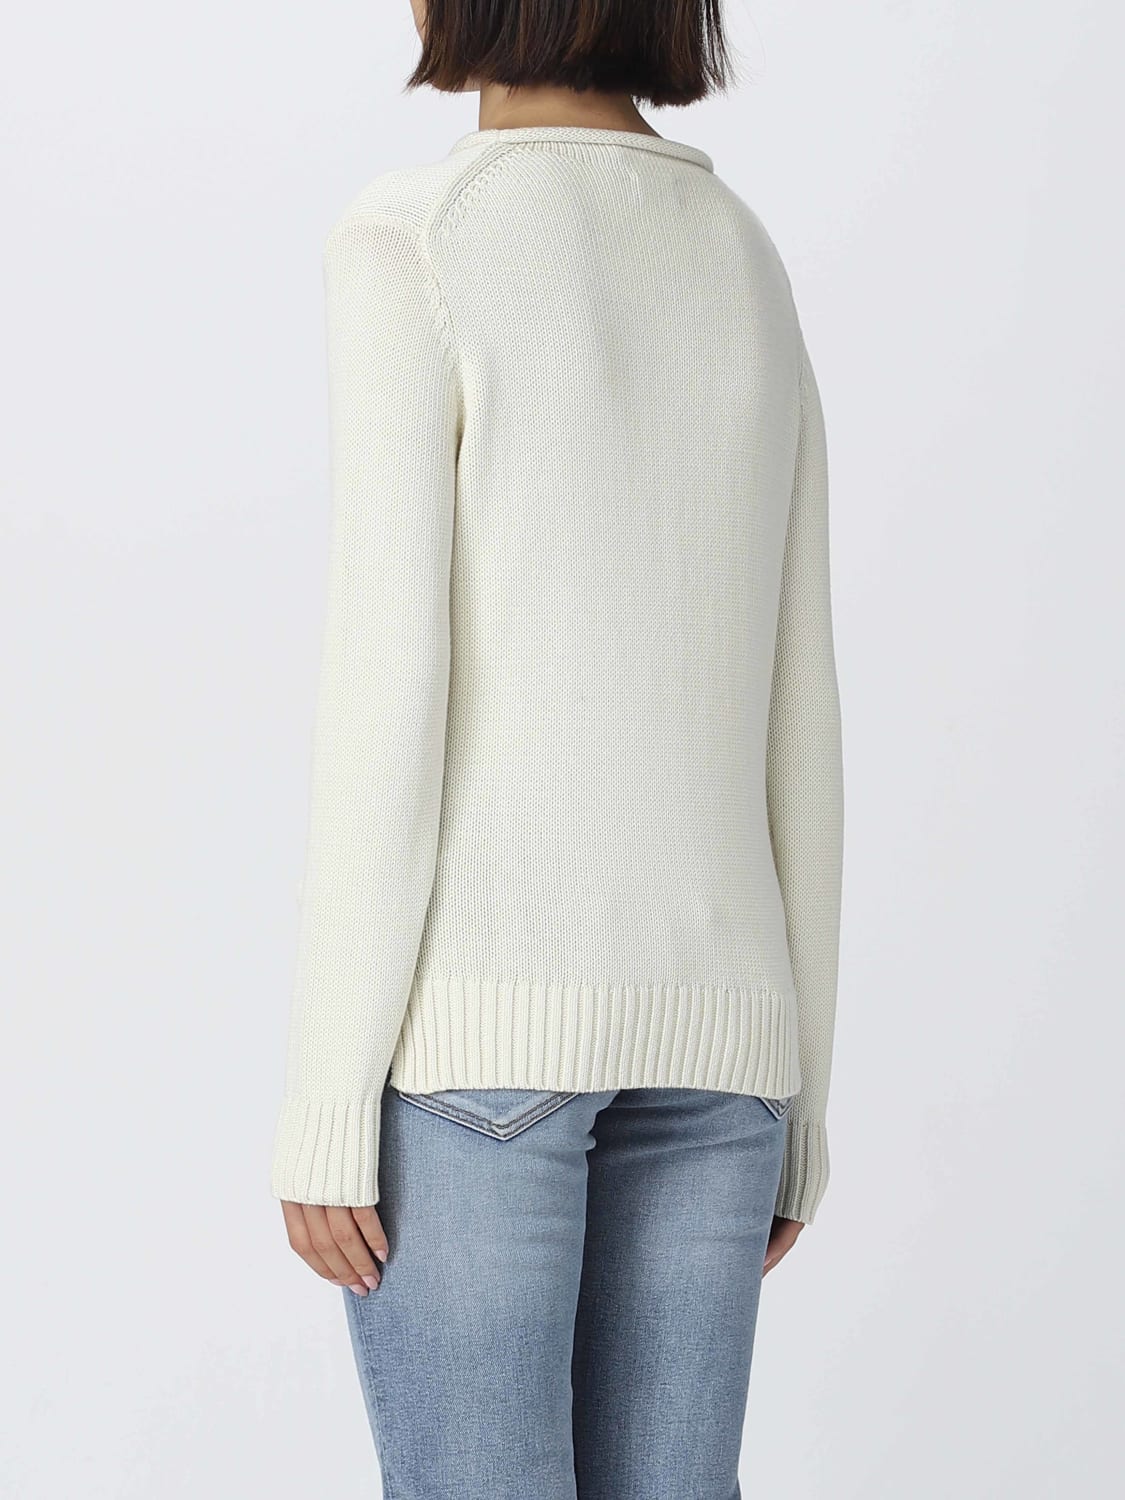 POLO RALPH LAUREN: Sweater woman - Cream  POLO RALPH LAUREN sweater  211910427 online at